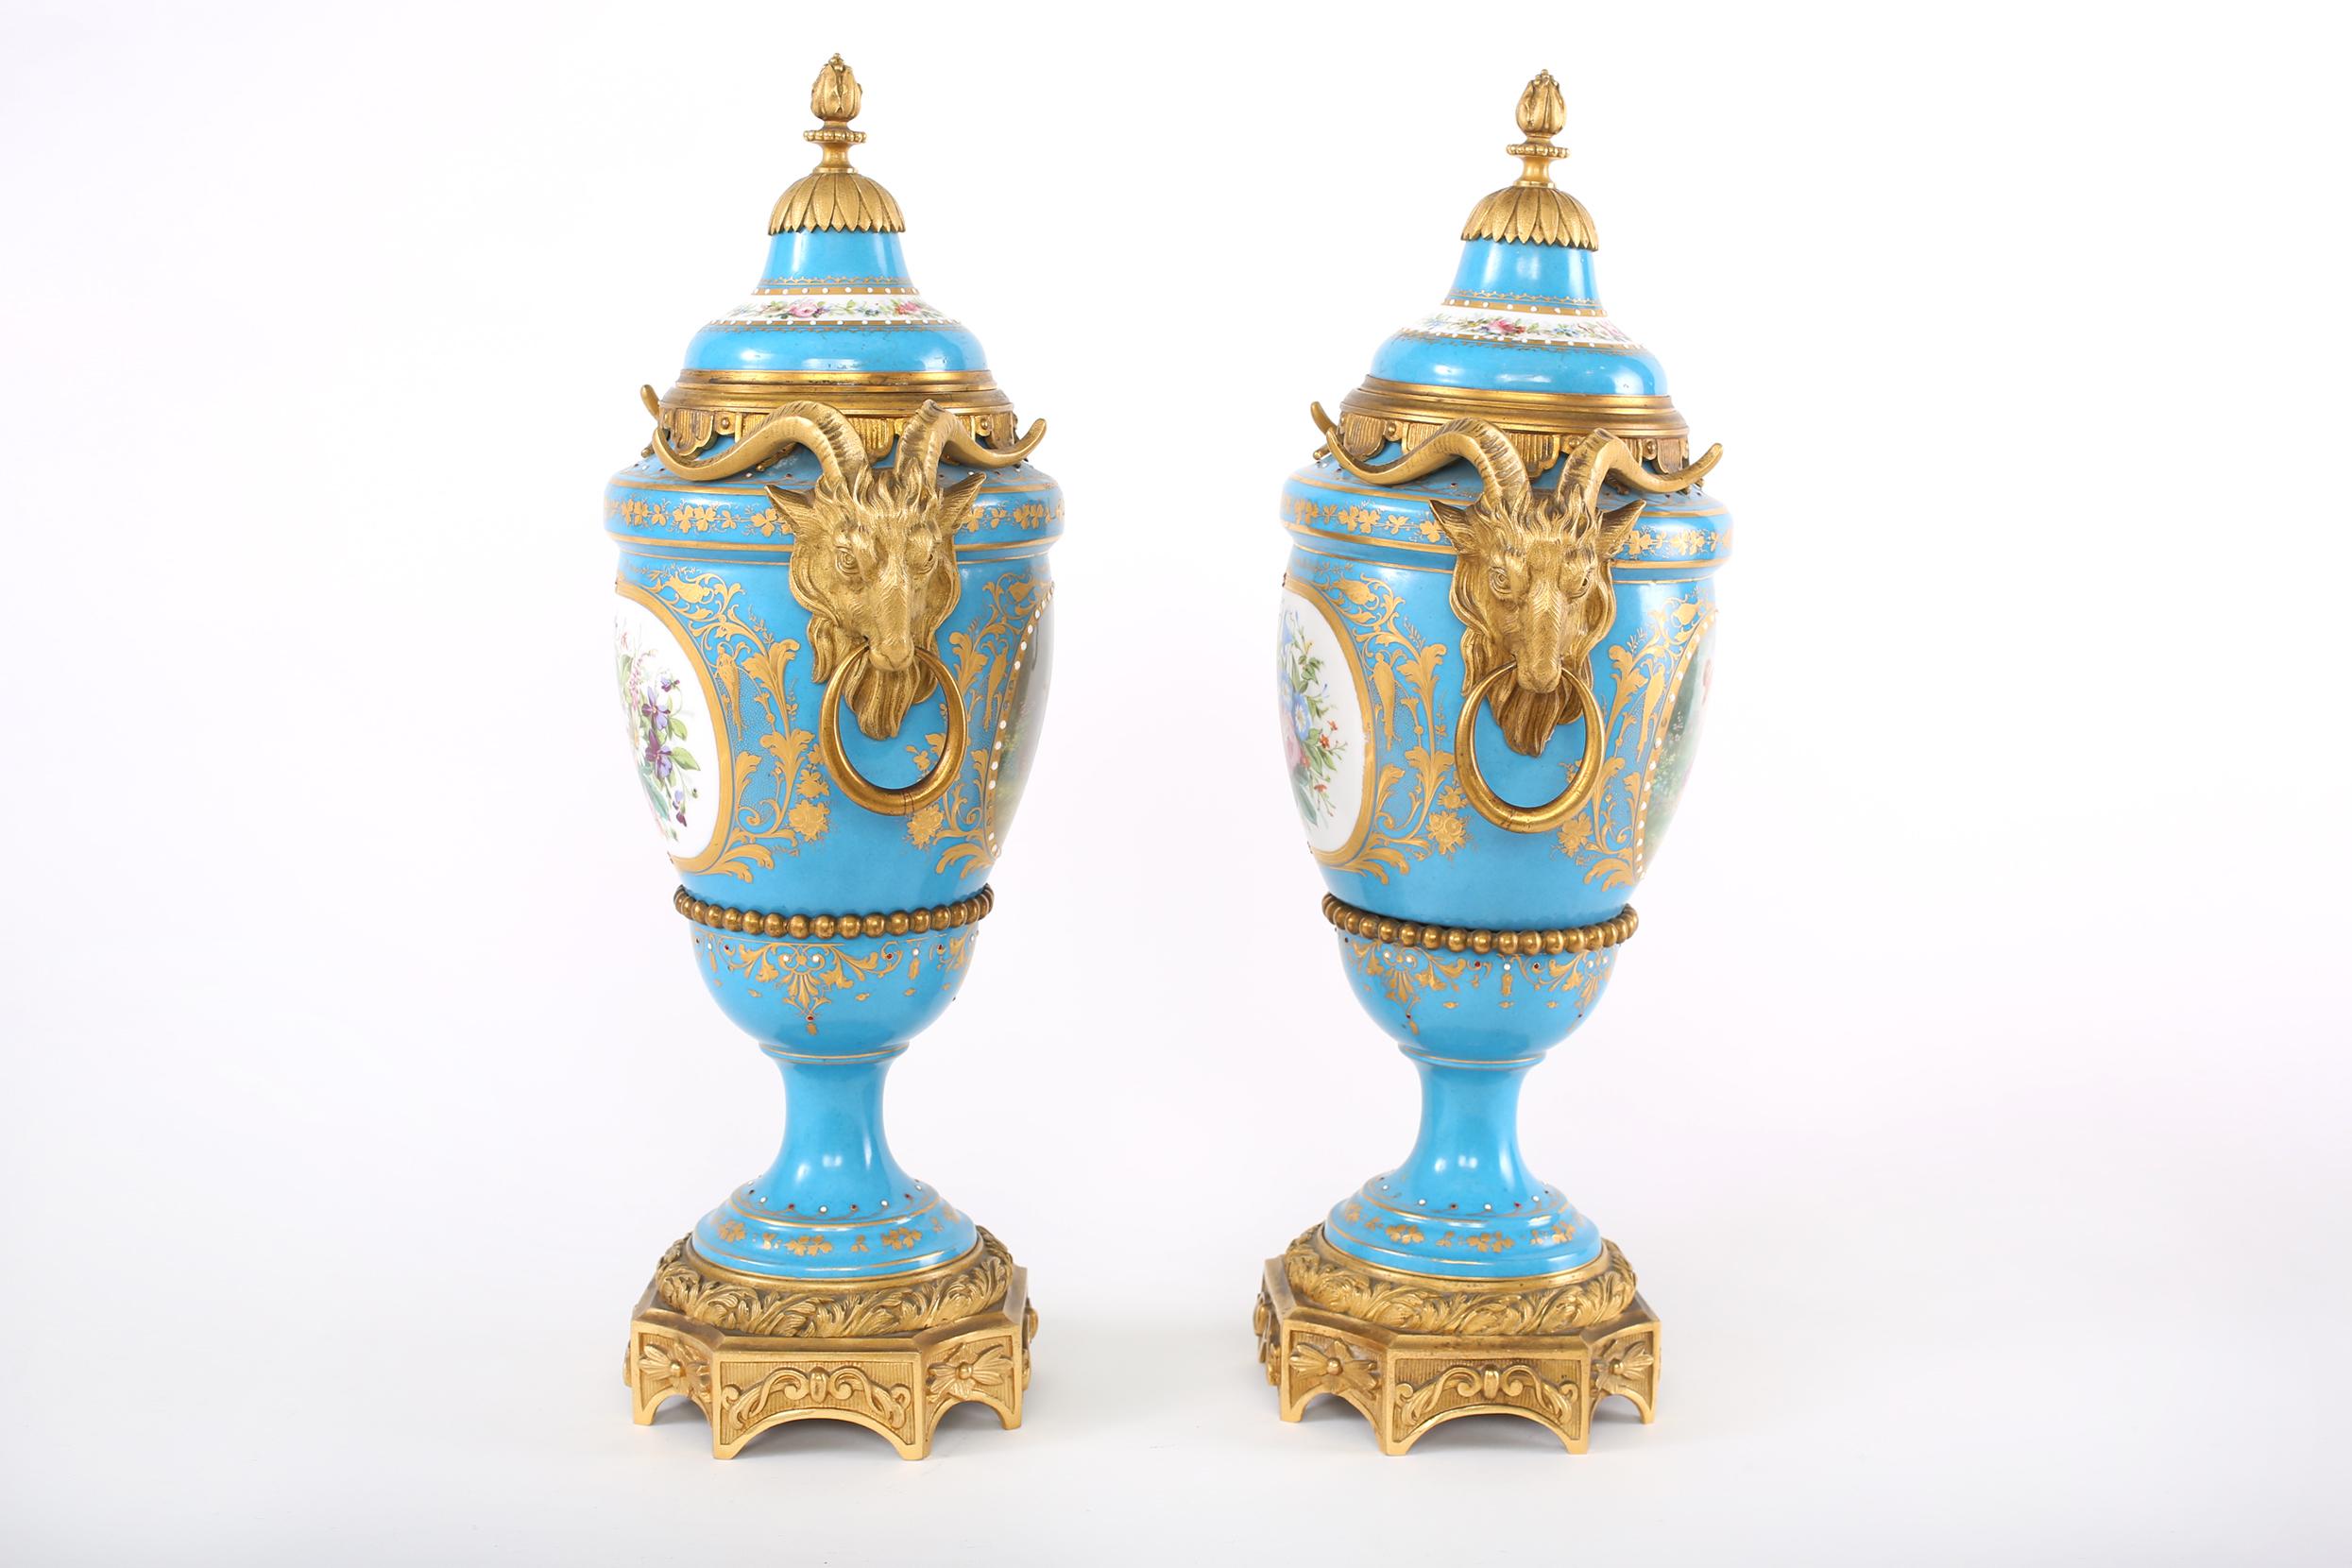 19. Jahrhundert Französisch Sèvres-Stil Porzellan vergoldet Bronze montiert bedeckt dekorative Urnen / Vasen mit vergoldeten Szene Design Details gemalt. Jede Urne ist in gutem Zustand mit alters- und gebrauchsbedingten Gebrauchsspuren. Unterschrift